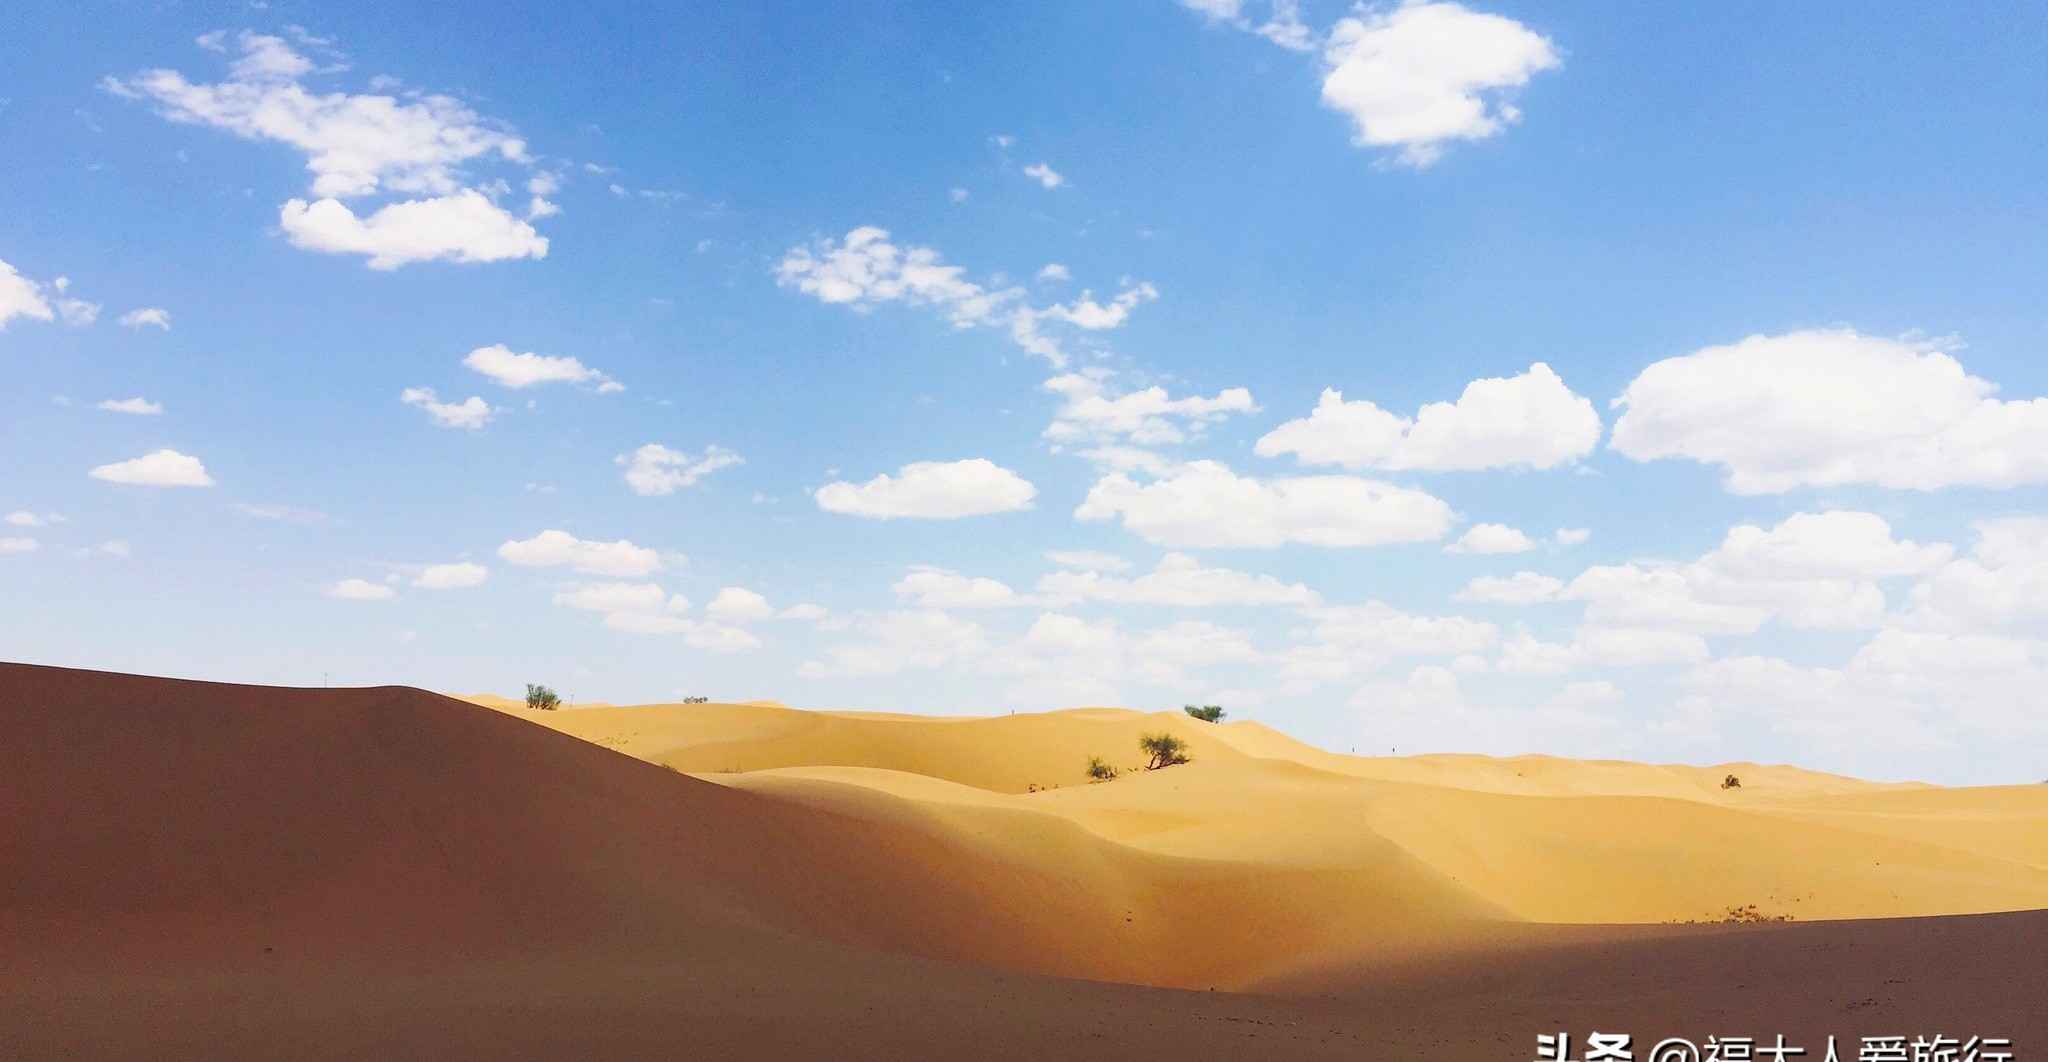 内蒙古腾格里大沙漠：自驾游深入沙海腹地，发现一个奇妙的世界